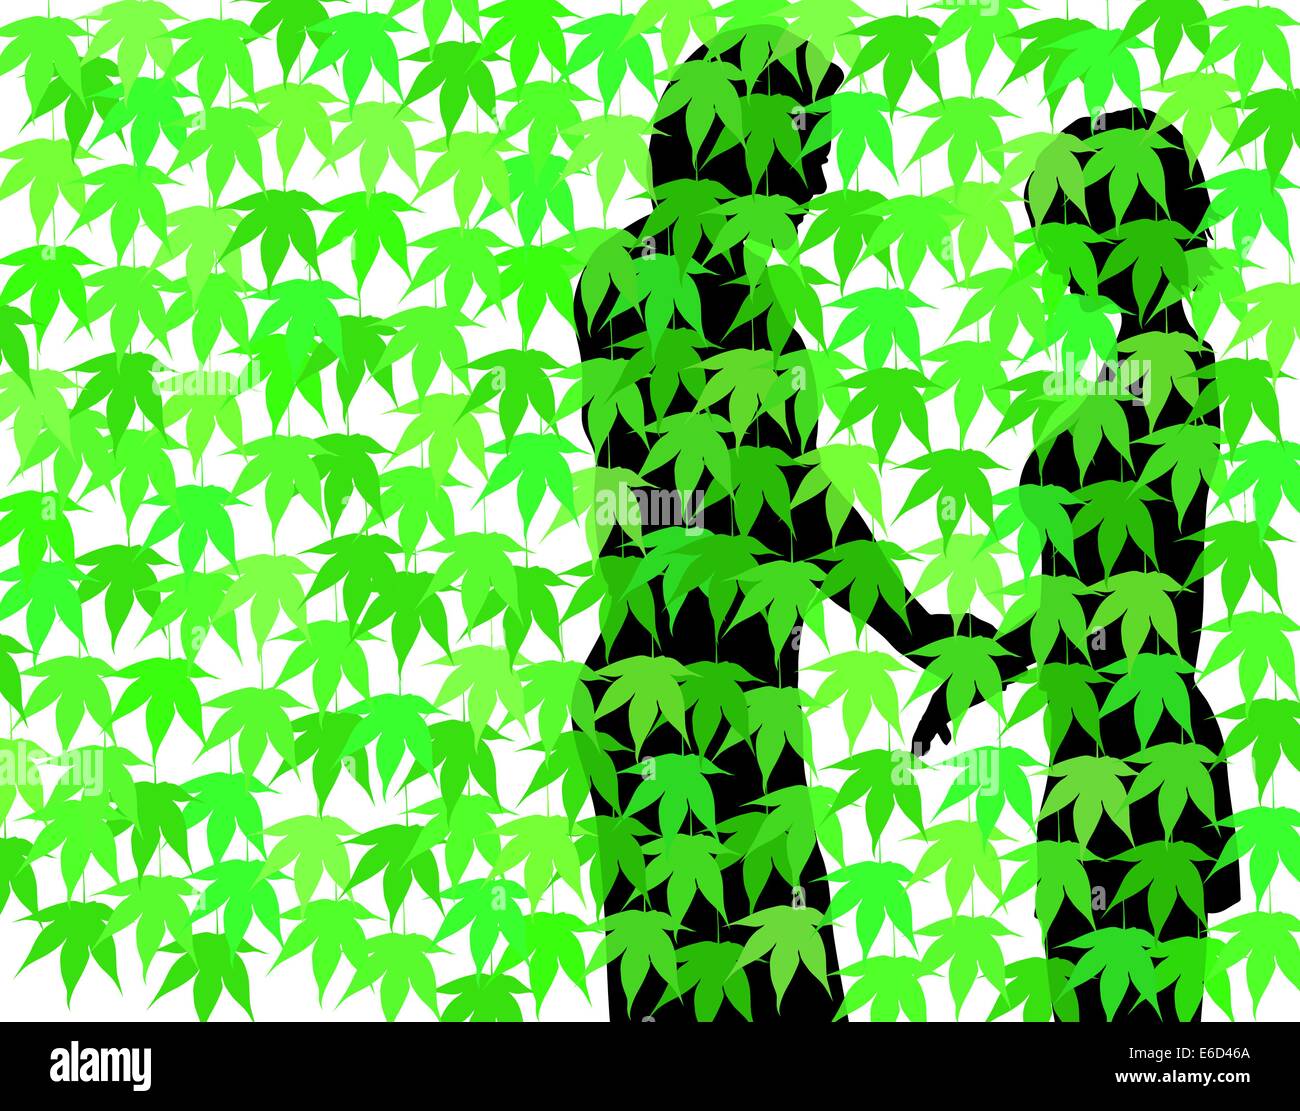 Ilustración vectorial editable de una pareja detrás de una cortina de hojas de arce Ilustración del Vector